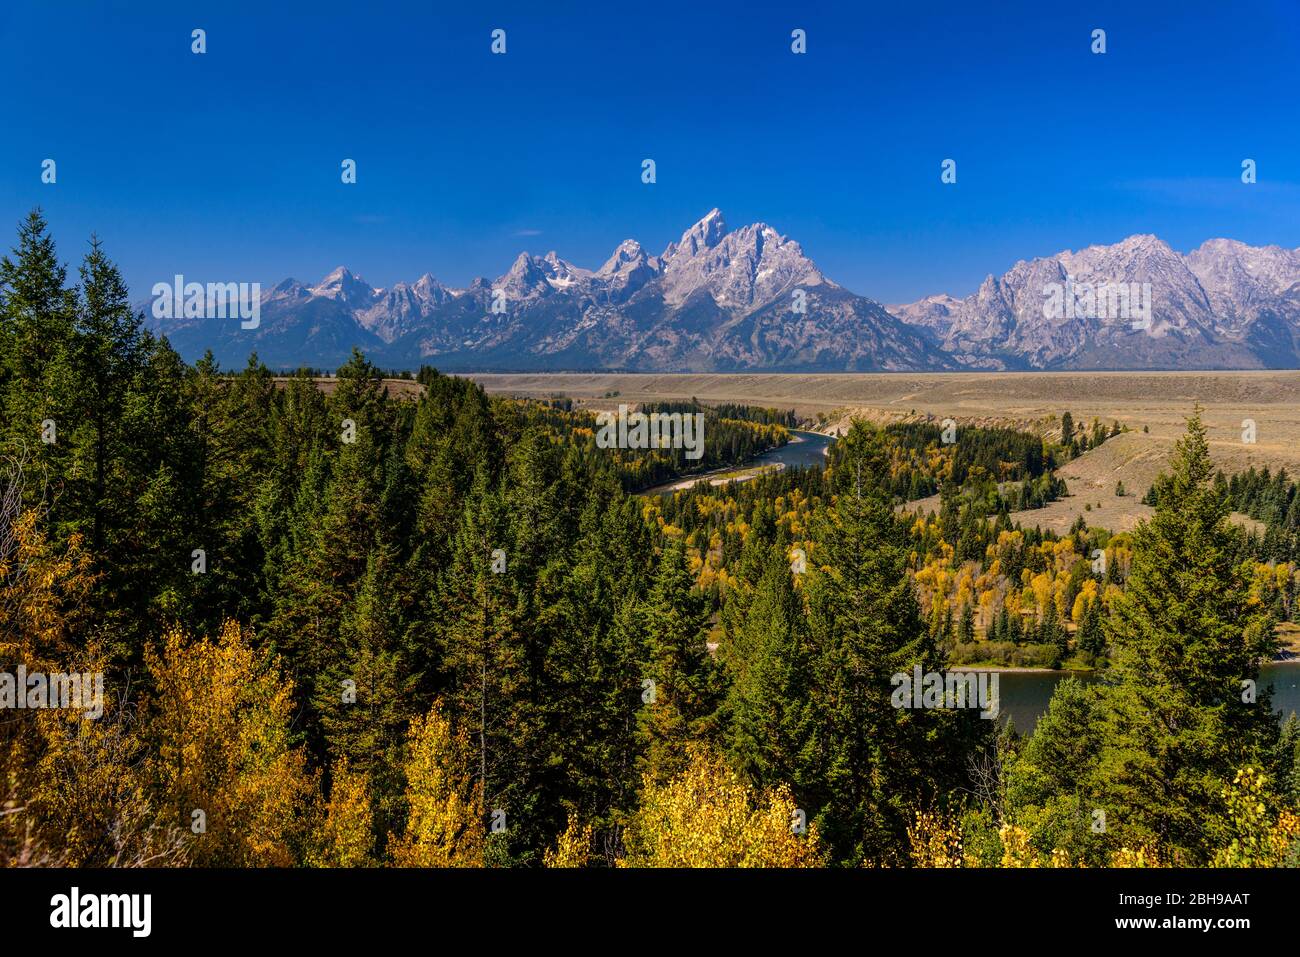 Les États-Unis, le Wyoming, le parc national du Grand Teton, Moose, Teton Range, Snake River surplombent Banque D'Images